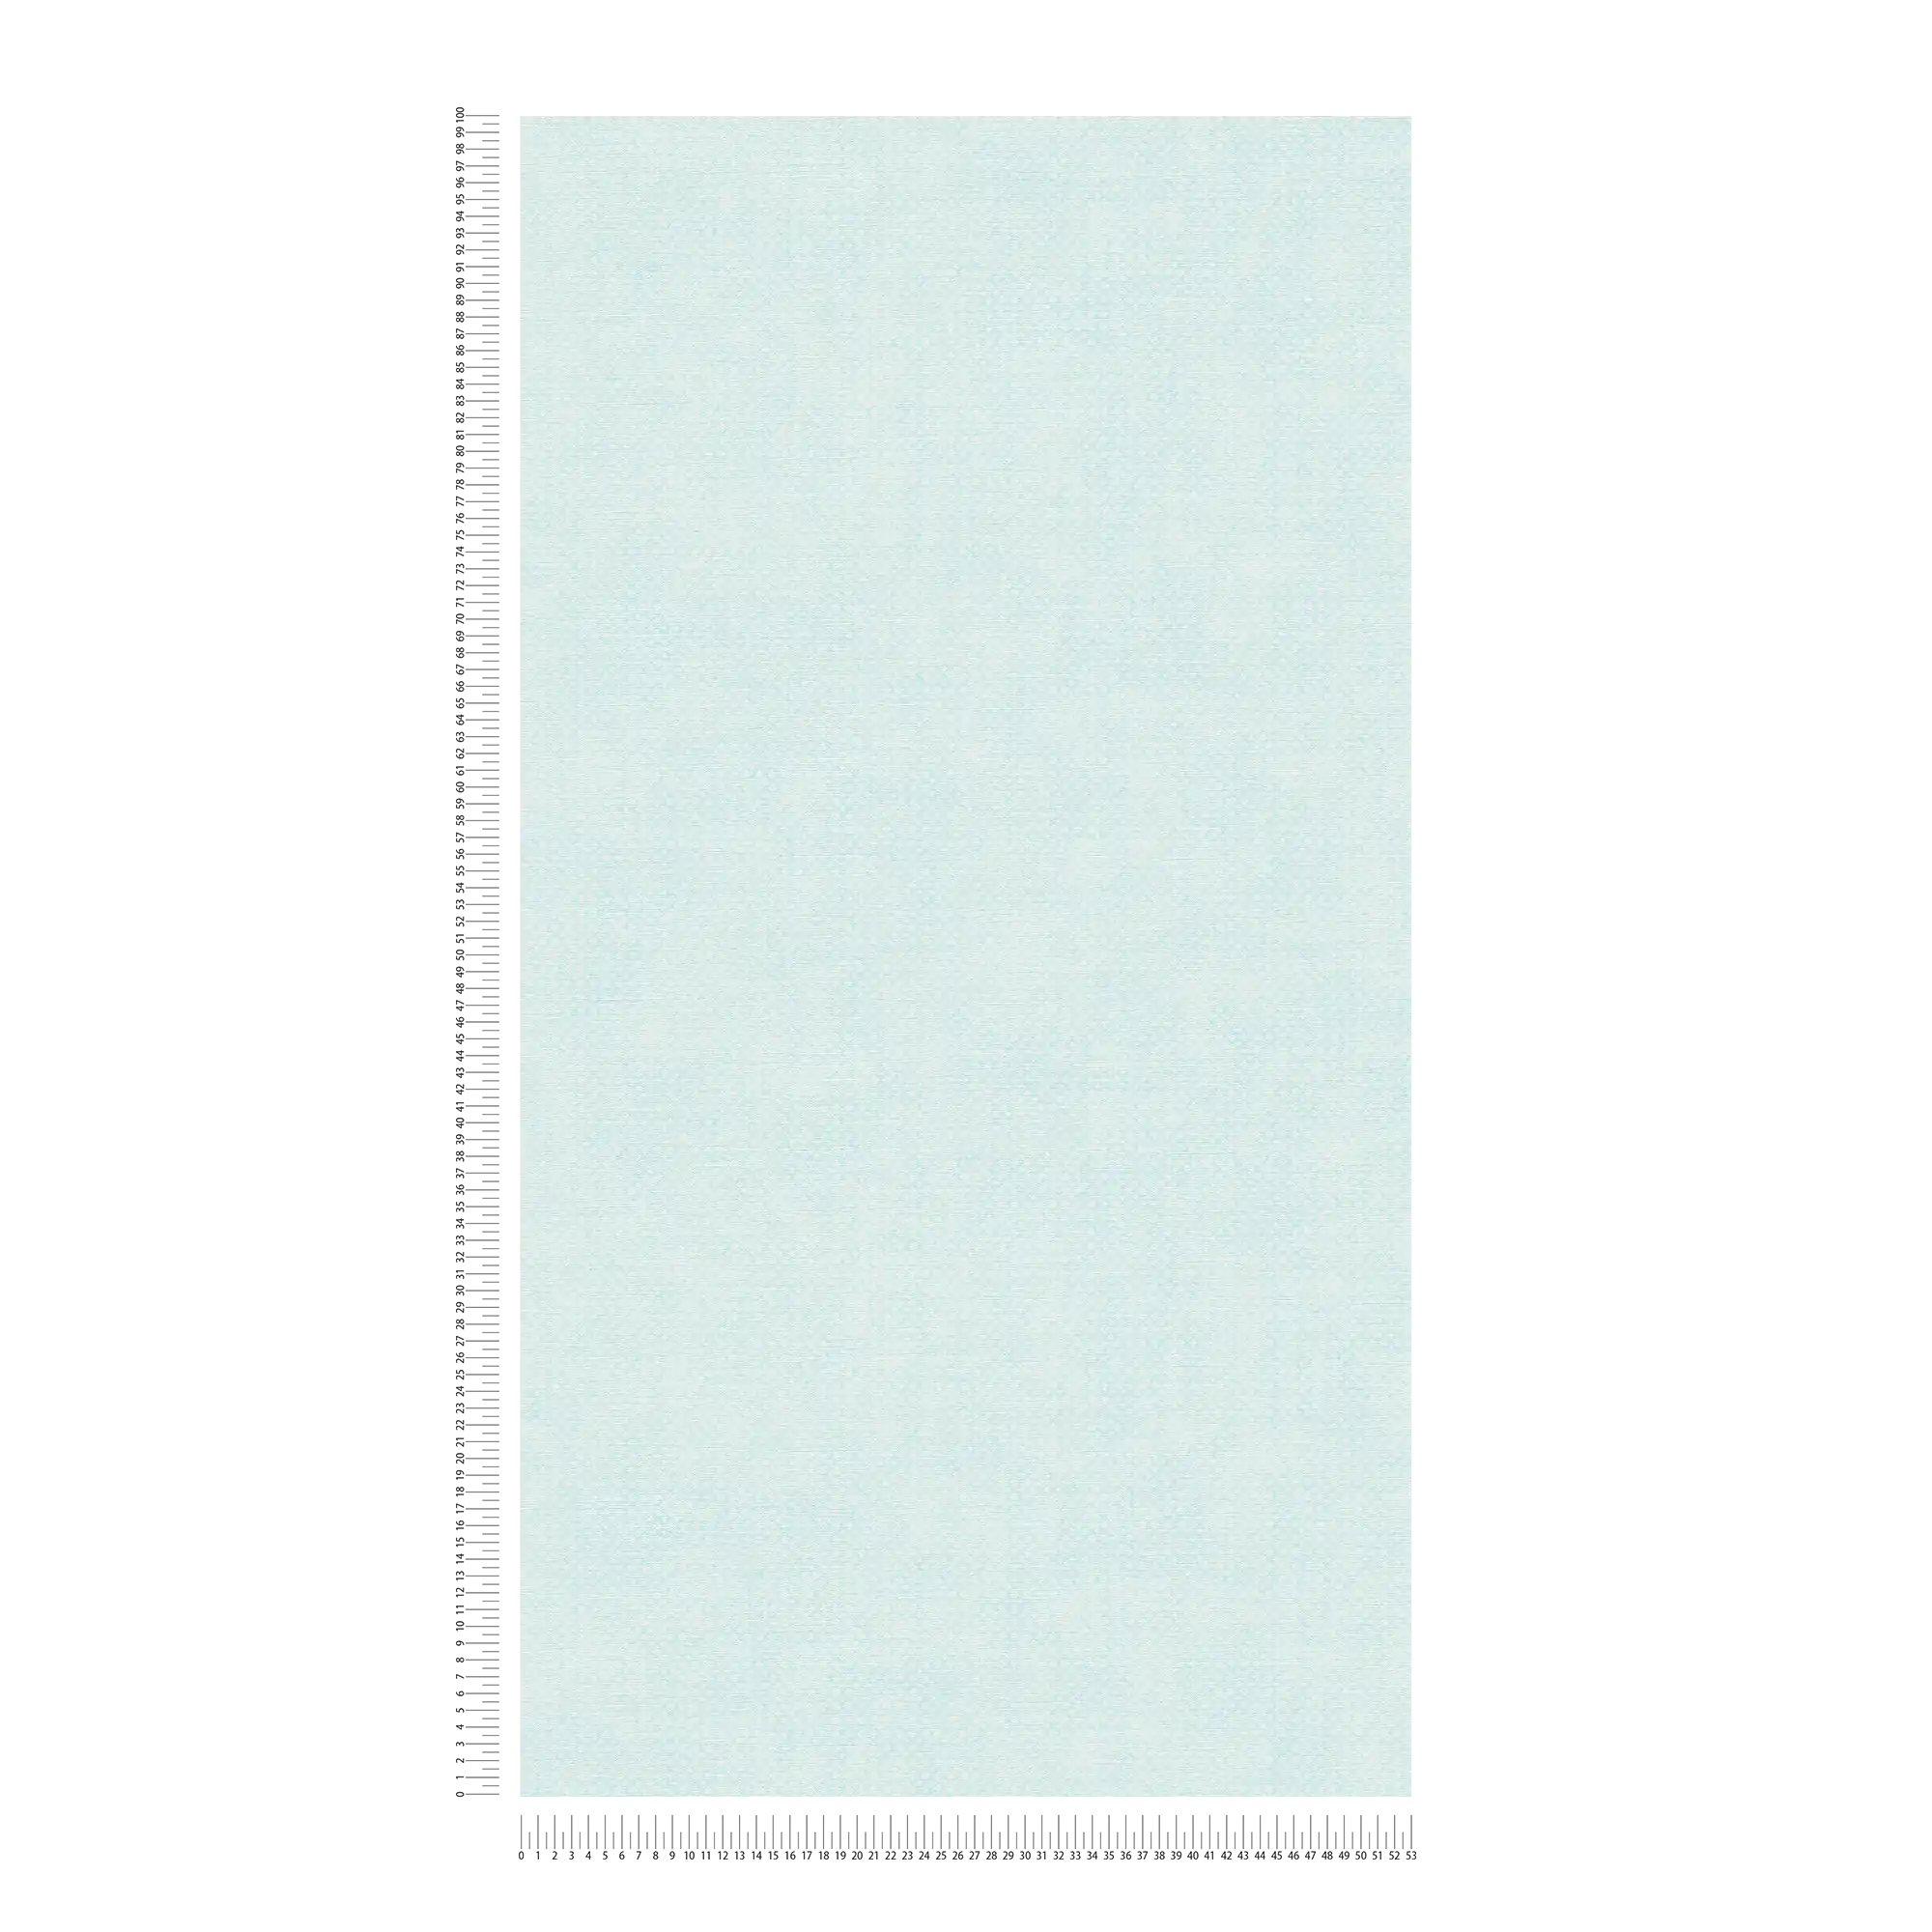             Papier peint intissé à motif finement structuré - bleu, blanc
        